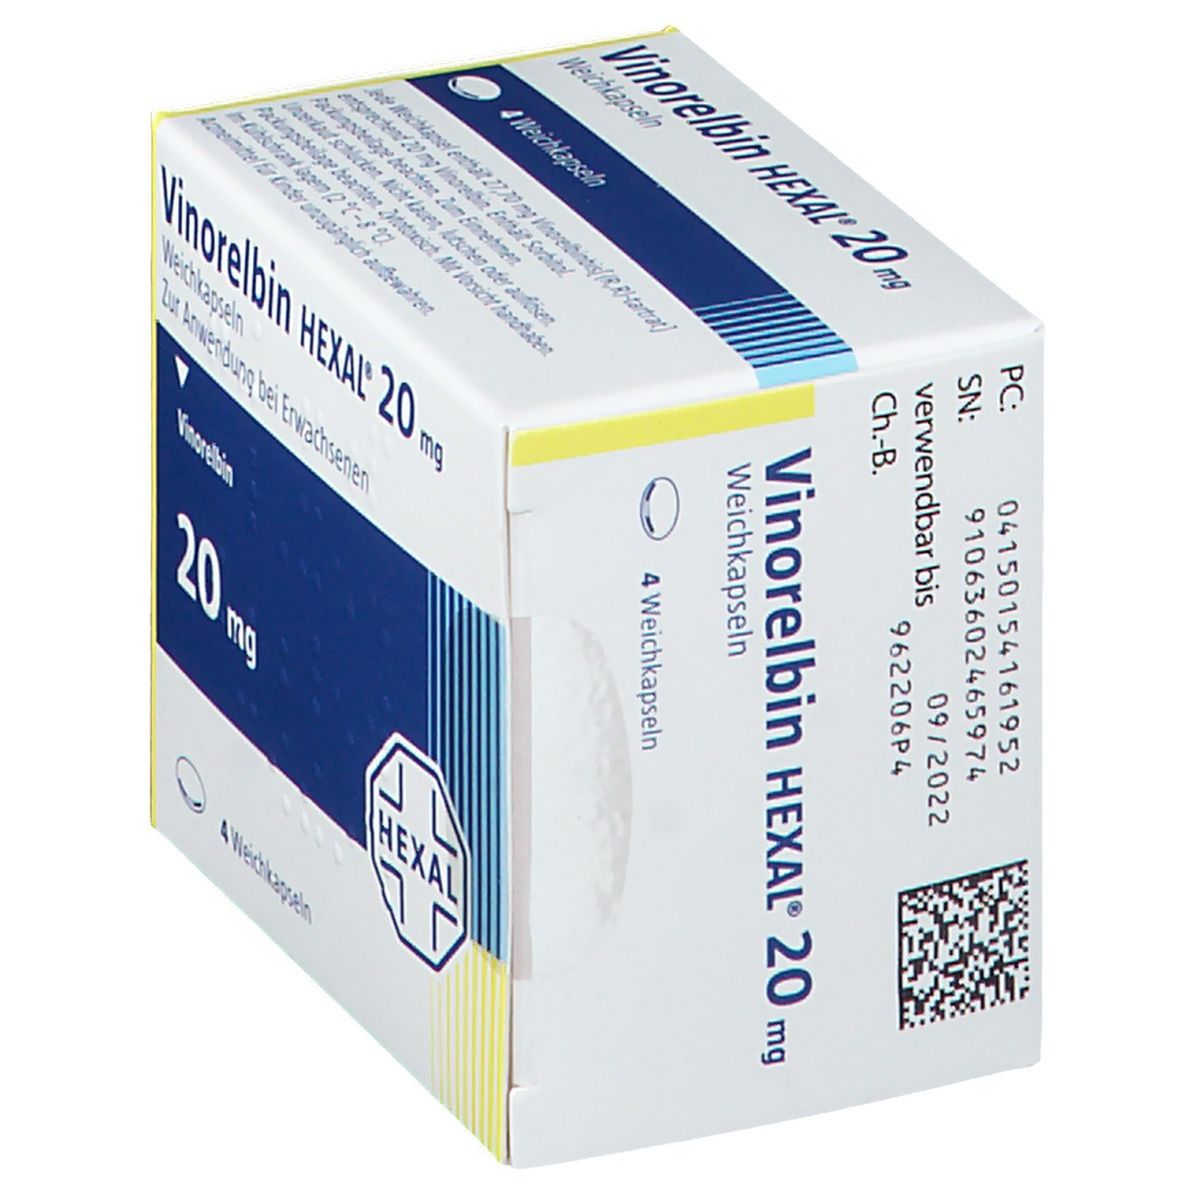 Vinorelbin HEXAL® 20 mg